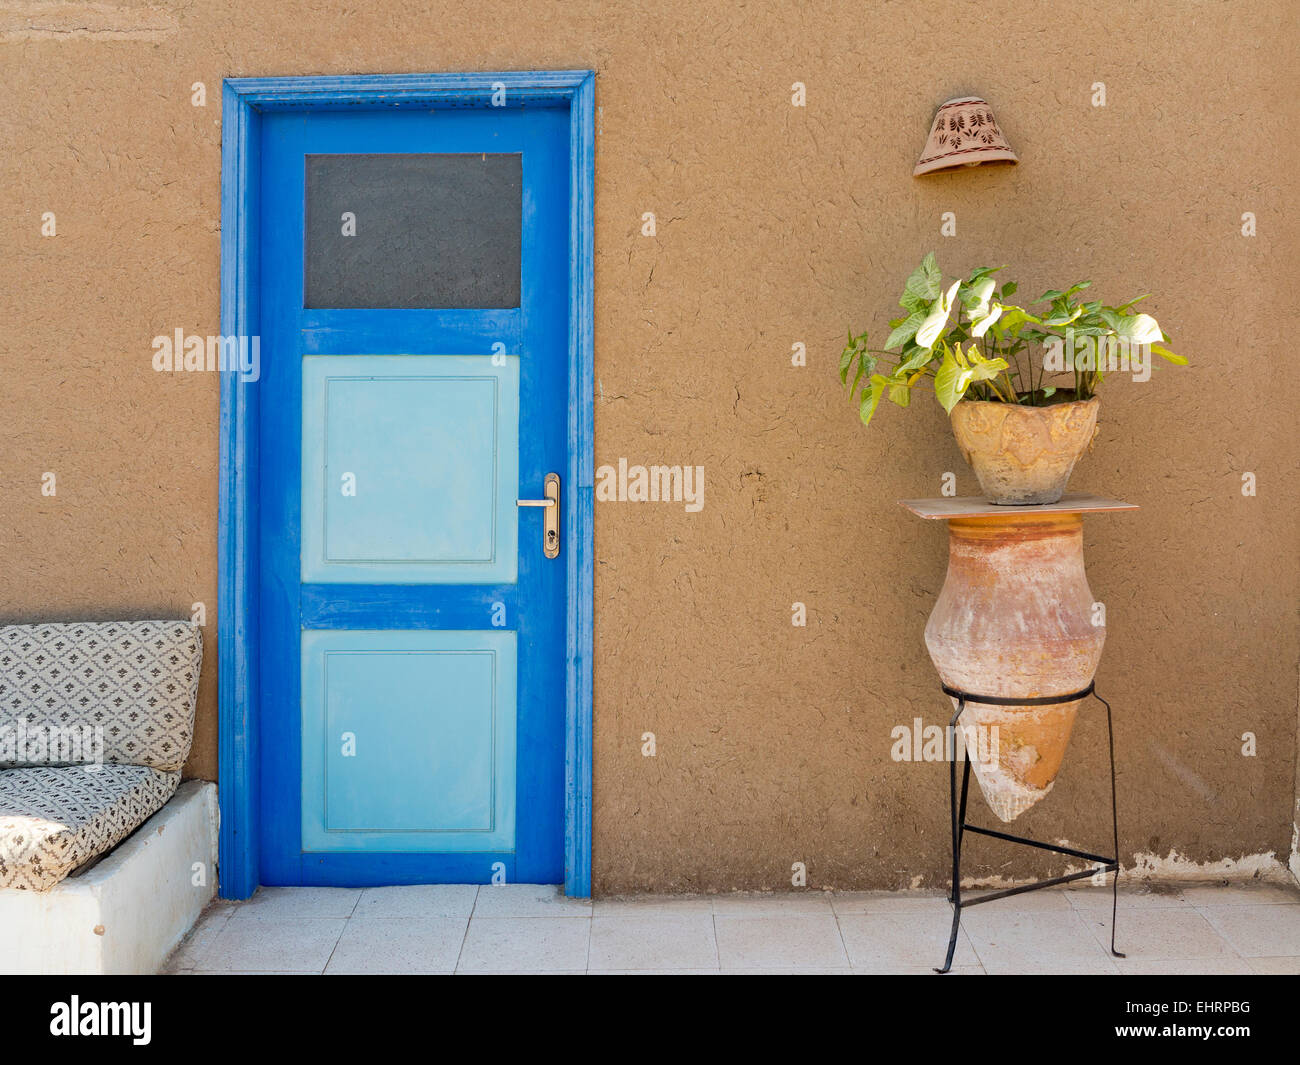 1 Keramik-Wasserträger am Stativ Metallständer als ein Werk stehen gegen eine helle blaue Tür & Schlamm Mauer Ägypten Afrika Stockfoto